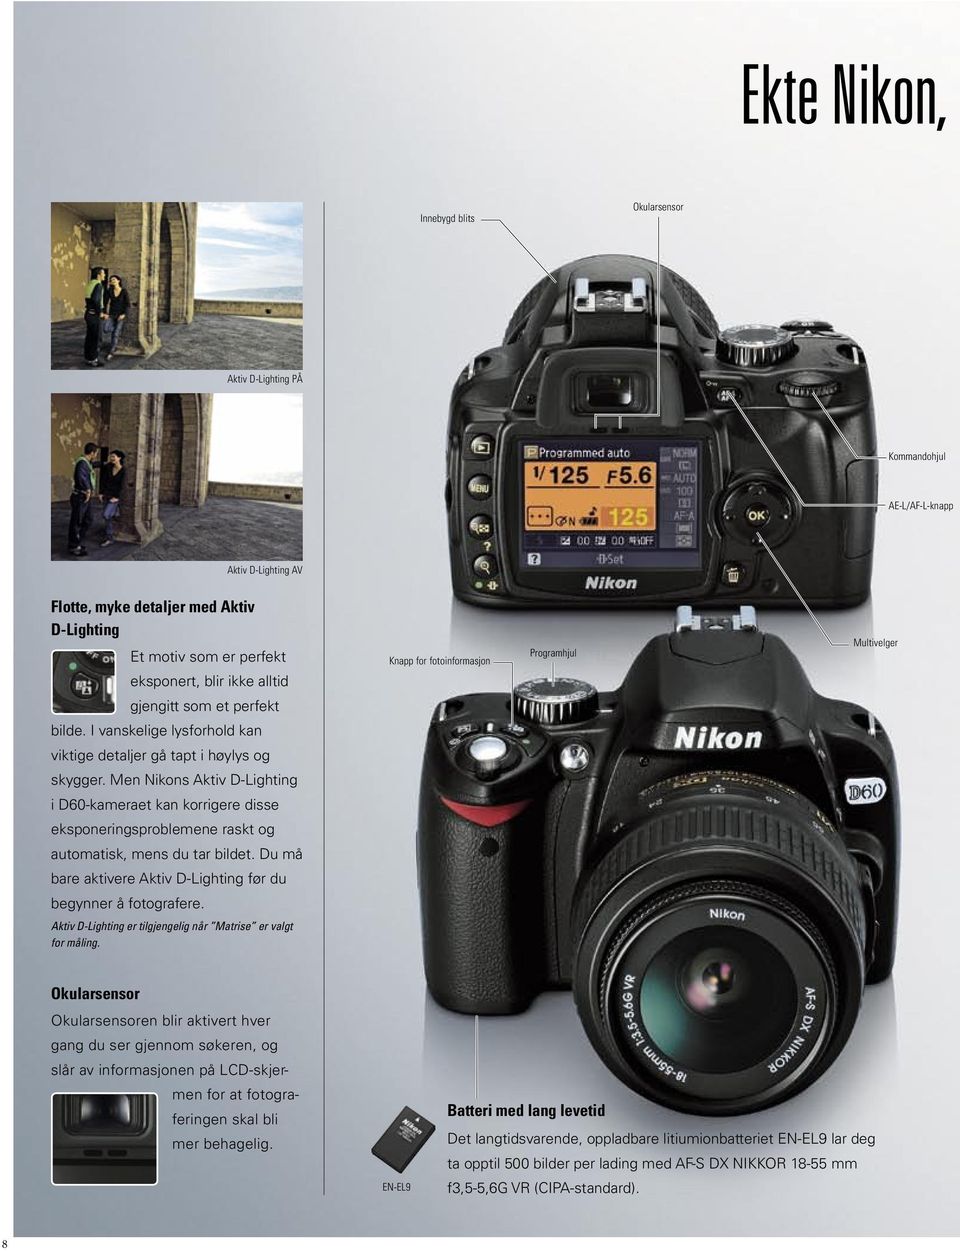 Men Nikons Aktiv D-Lighting i D60-kameraet kan korrigere disse eksponeringsproblemene raskt og automatisk, mens du tar bildet. Du må bare aktivere Aktiv D-Lighting før du begynner å fotografere.